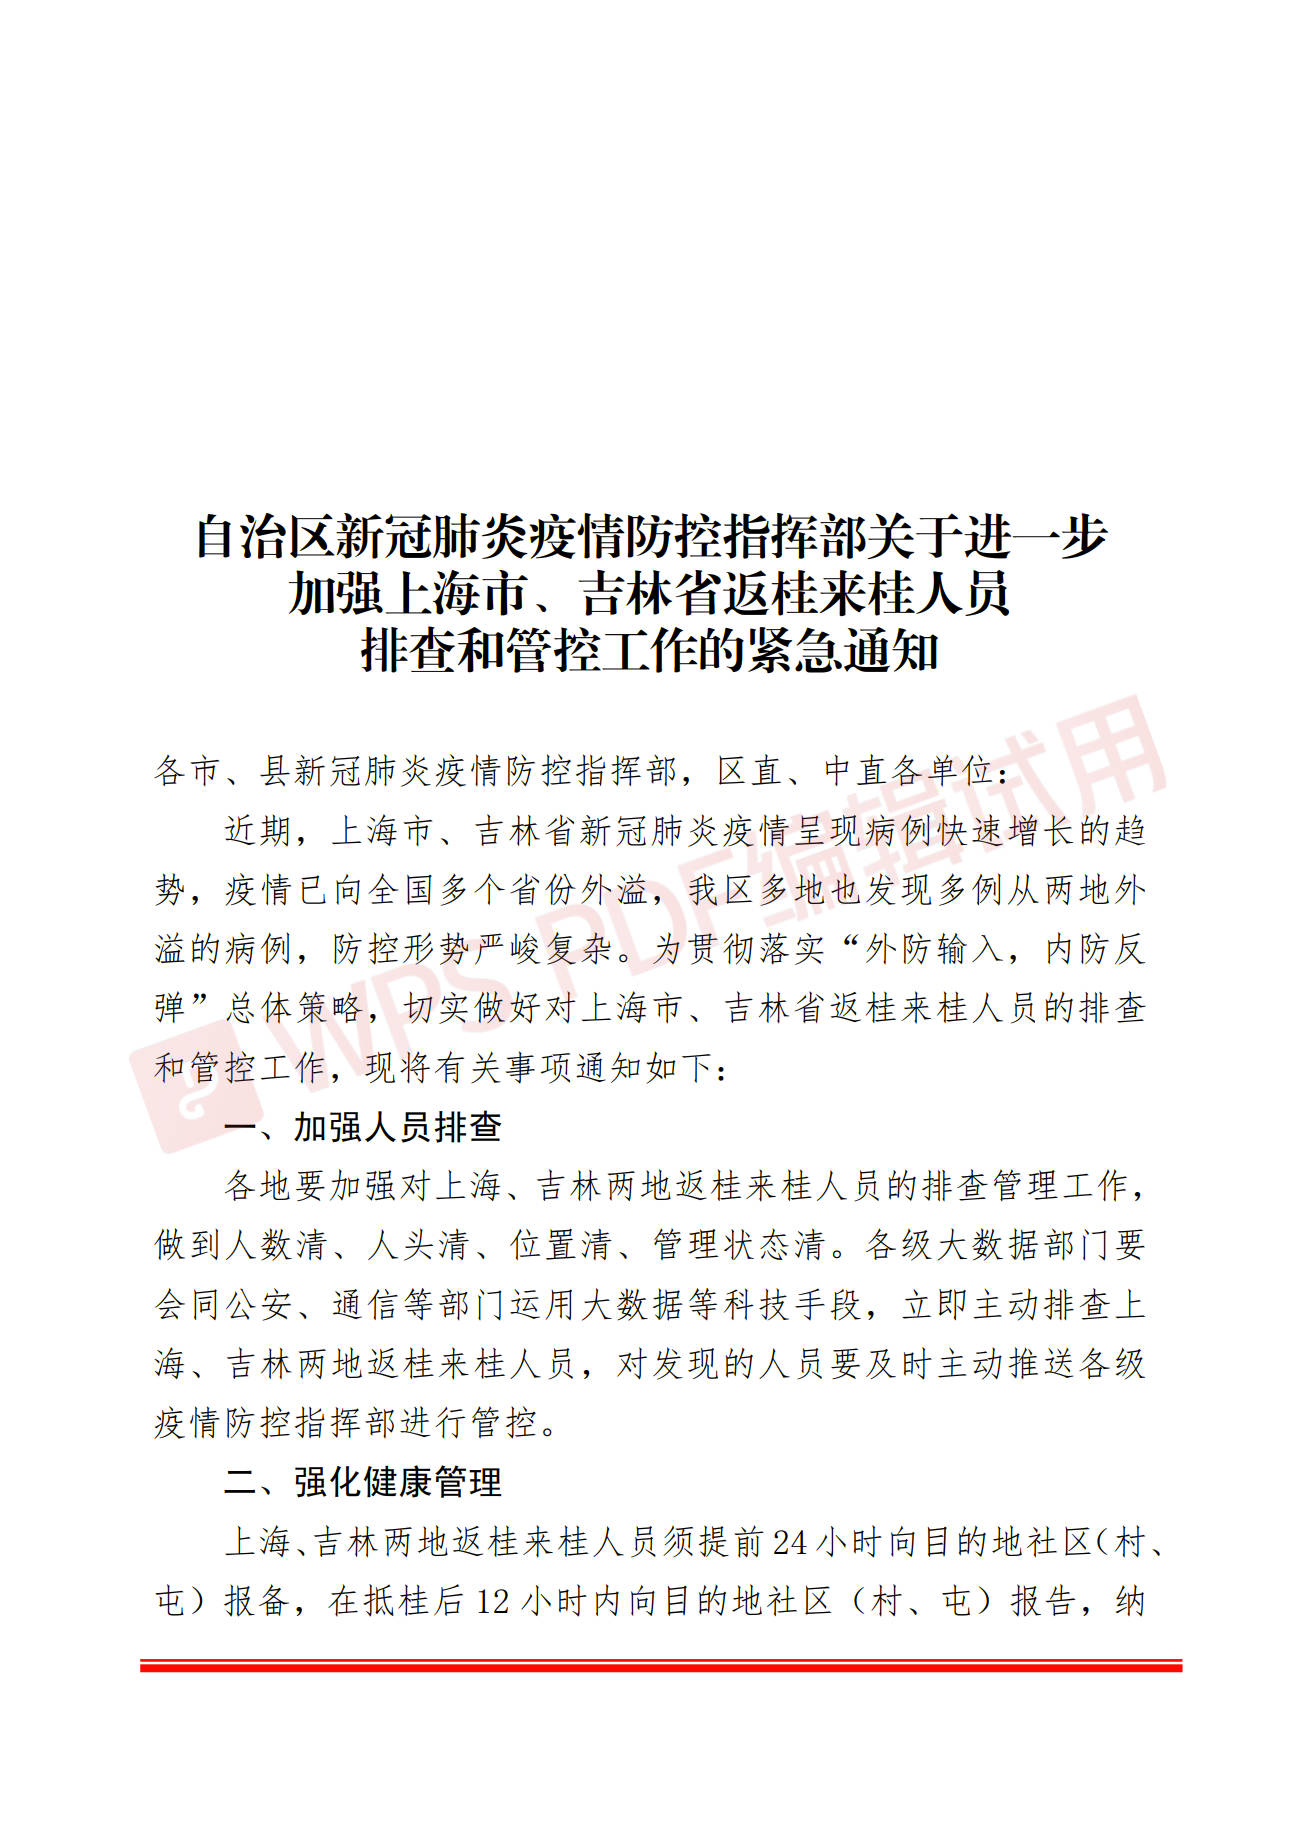 关于进一步加强上海市吉林省返桂来桂人员排查和管控工作的紧急通知